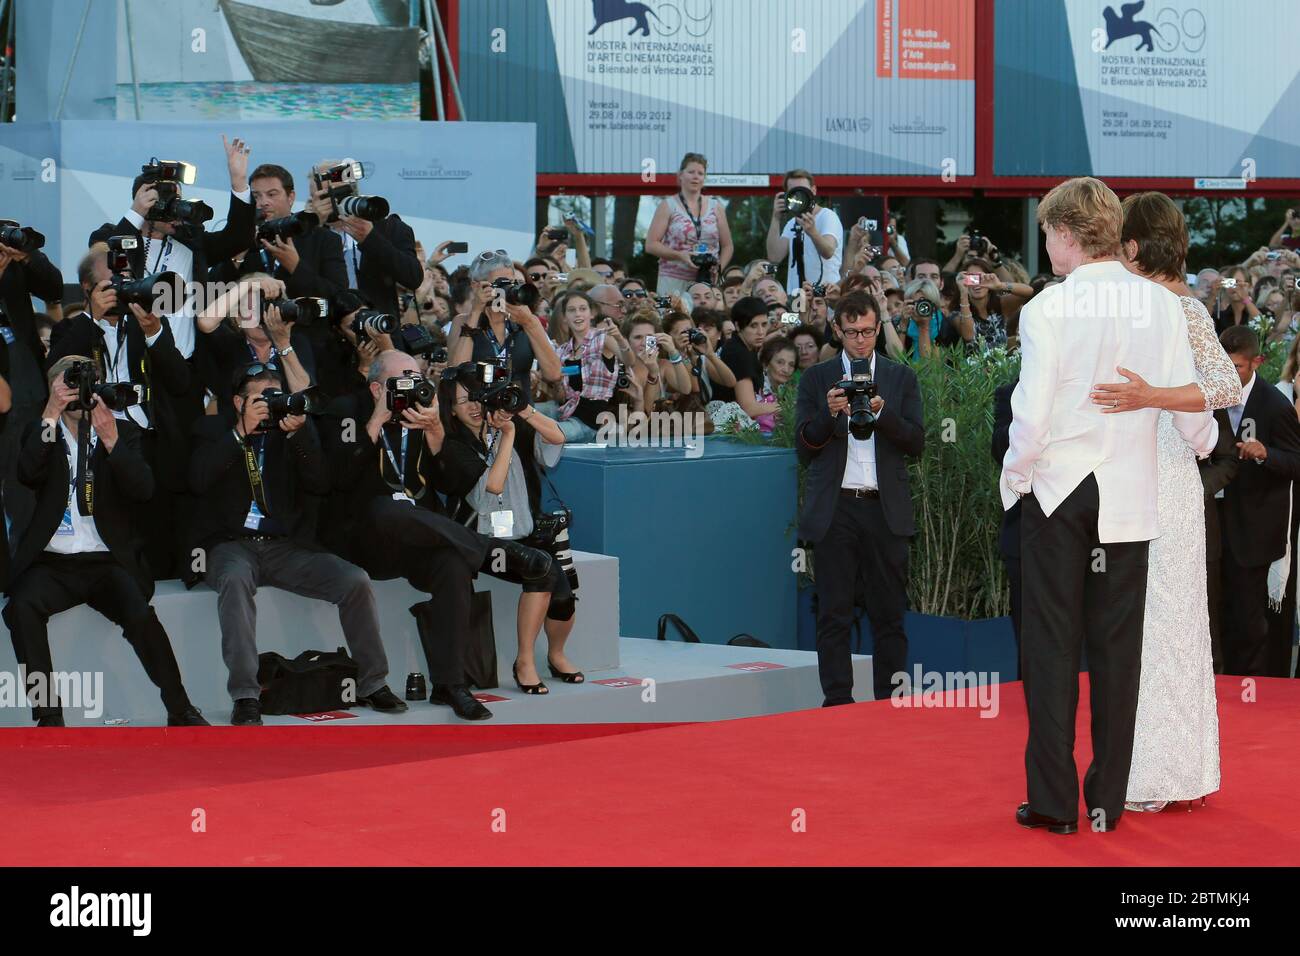 VENEDIG, ITALIEN - SEPTEMBER 06: Robert Redford und seine Frau Sibylle Szaggars nehmen an der Premiere von "The Company You Keep" auf dem 69. Filmfestival in Venedig Teil Stockfoto